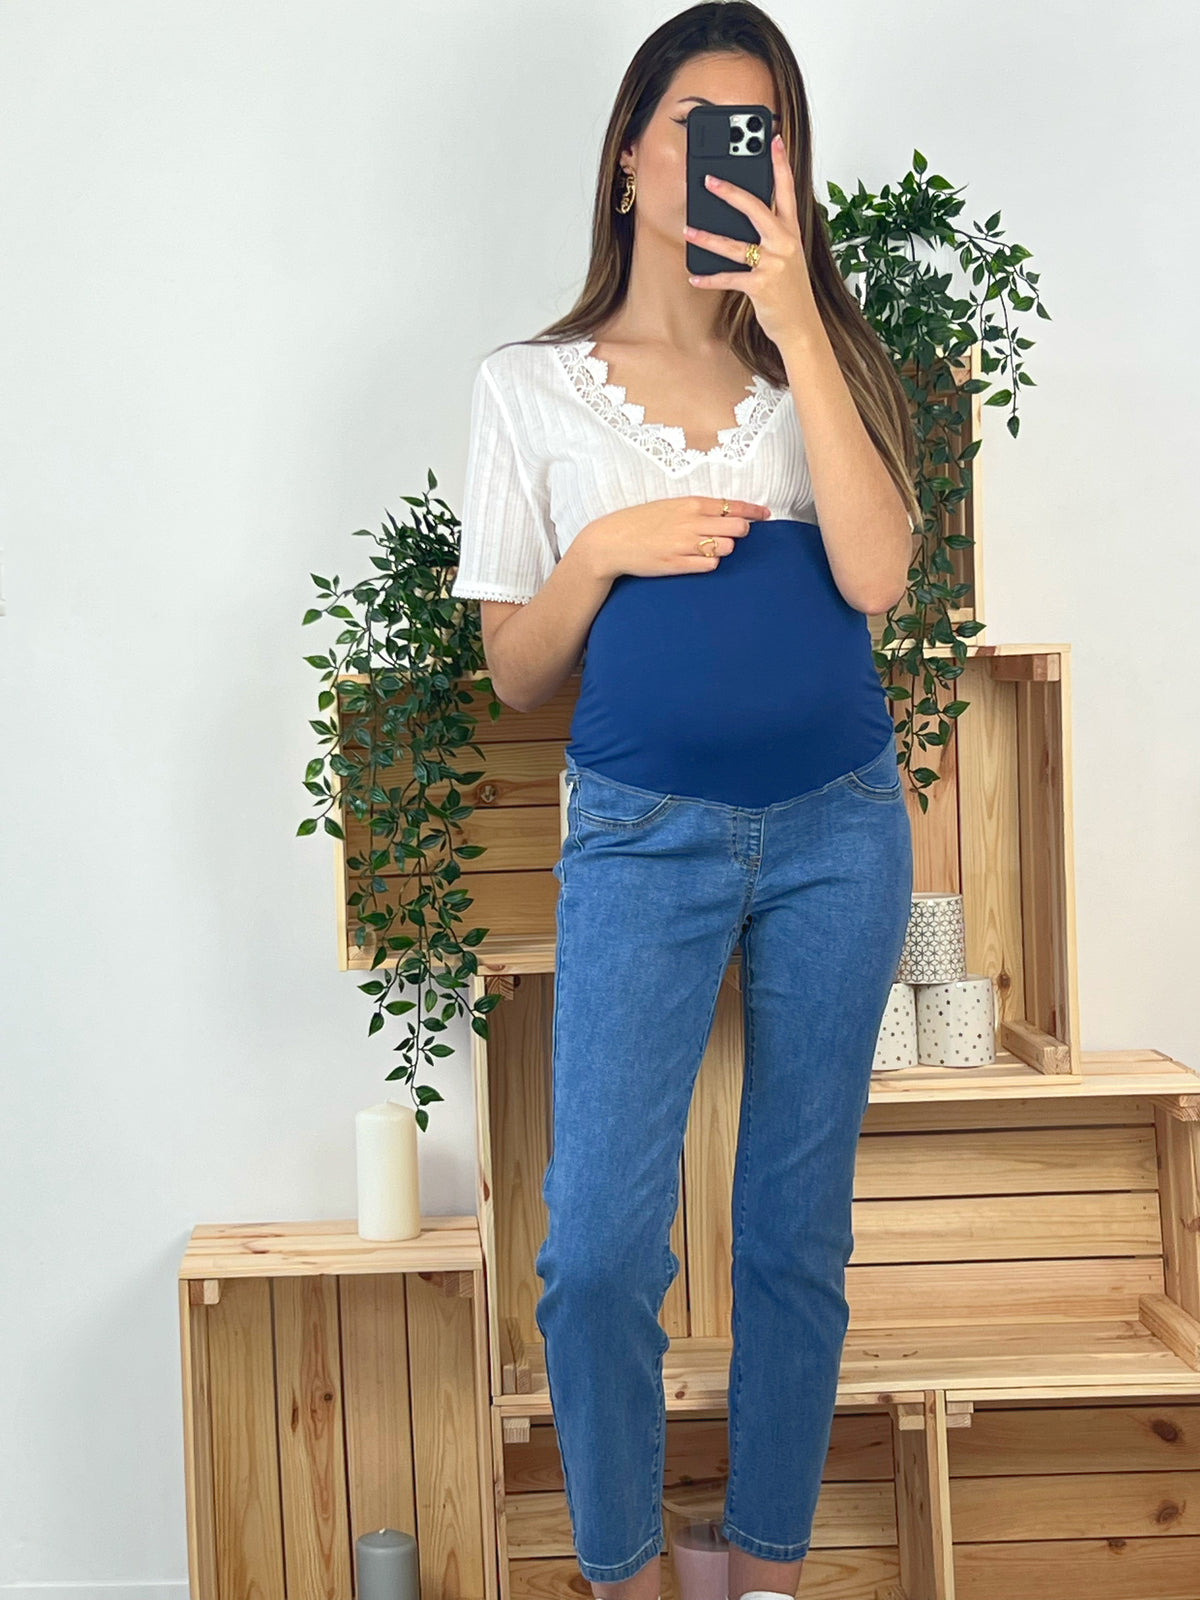 jean de grossesse coupe slim avec large bandeau elastique bleu